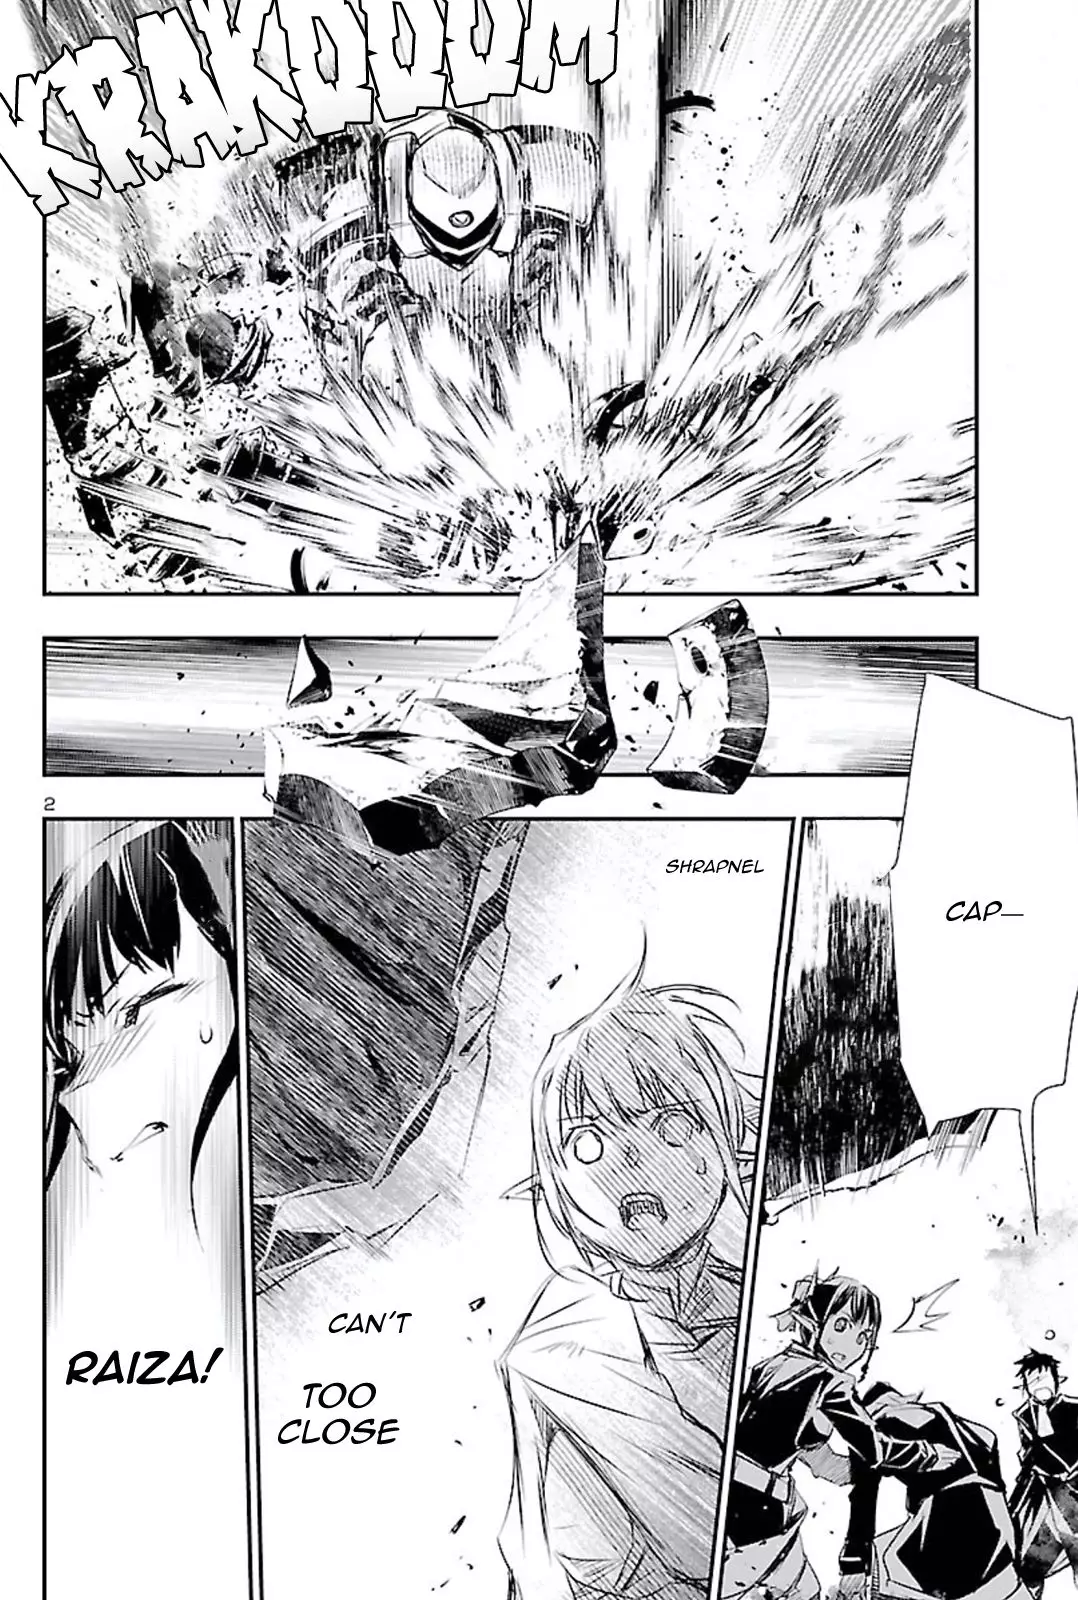 Shinju no Nectar - 46 page 2